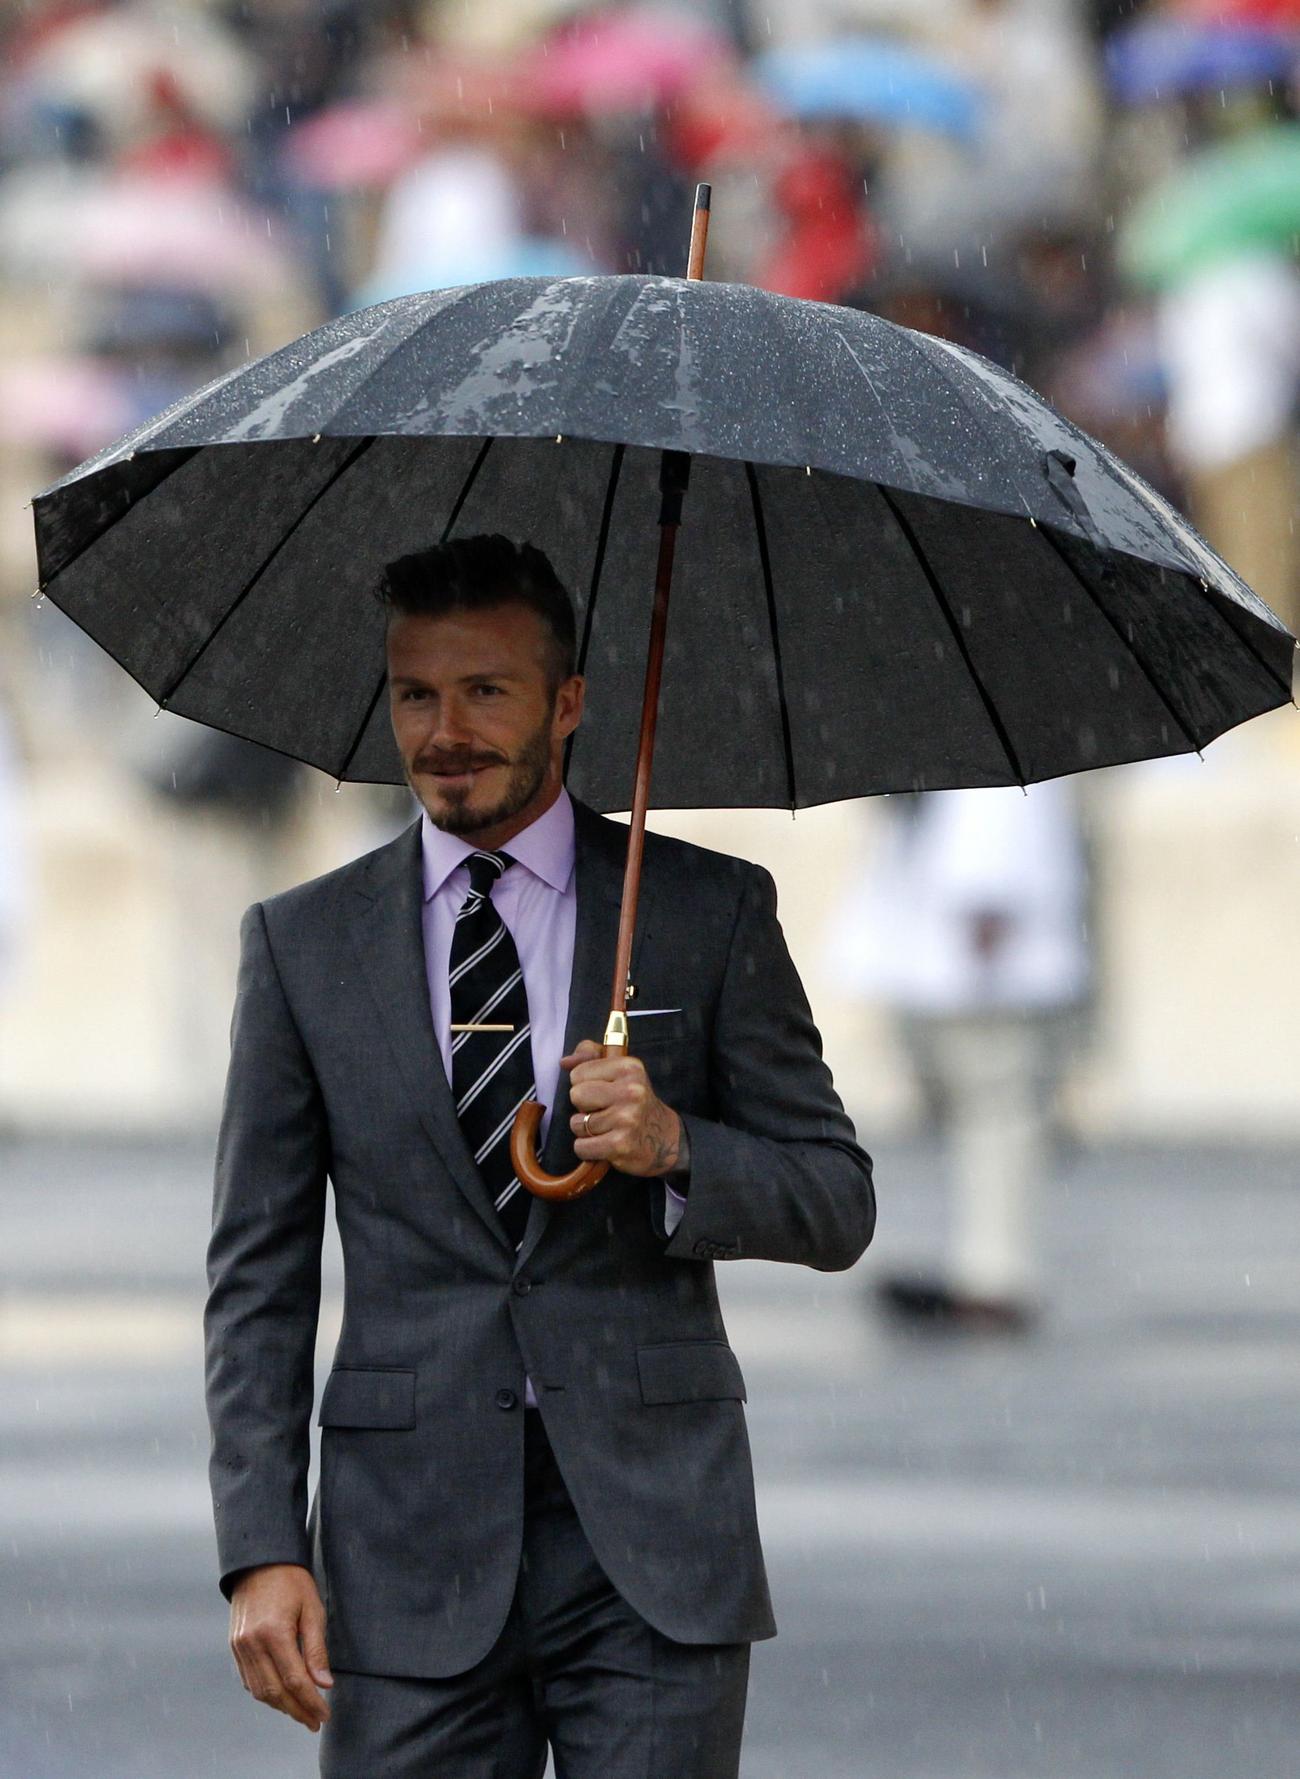 Человек под зонтом